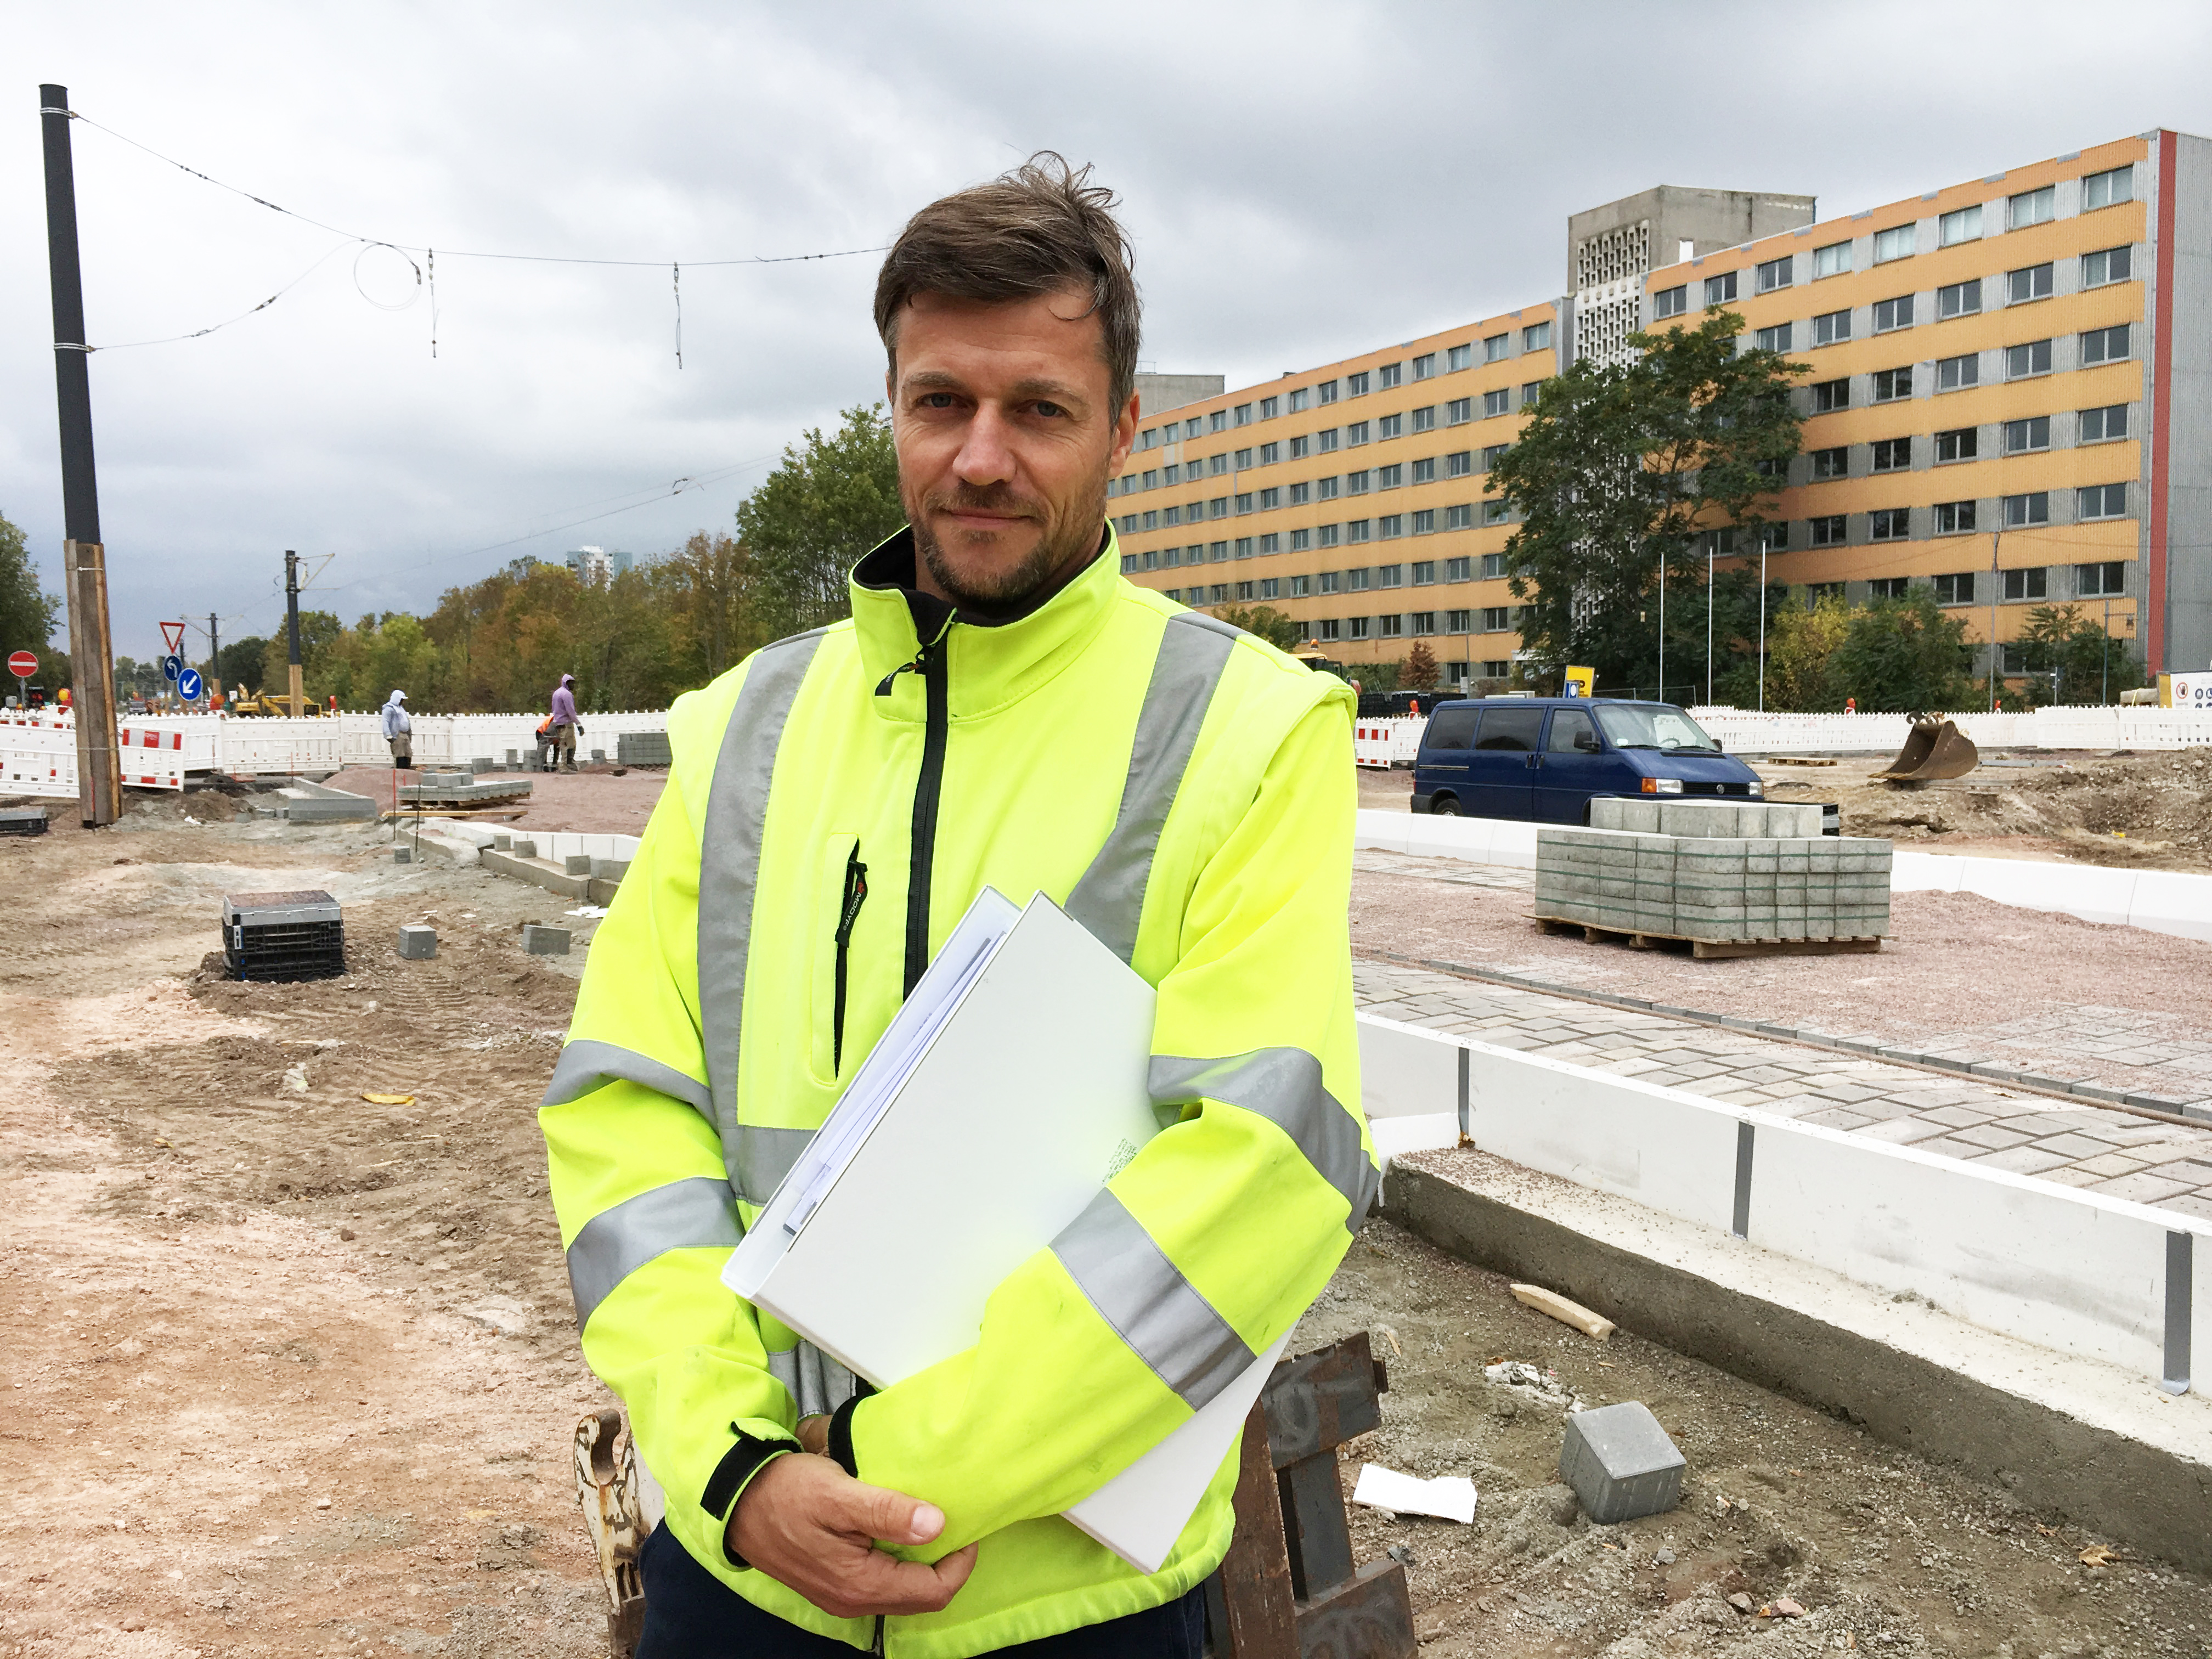 Jörg Linke ist das "Gesicht der Baustelle" am Gimritzer Damm. Fotos: Corinne Richert